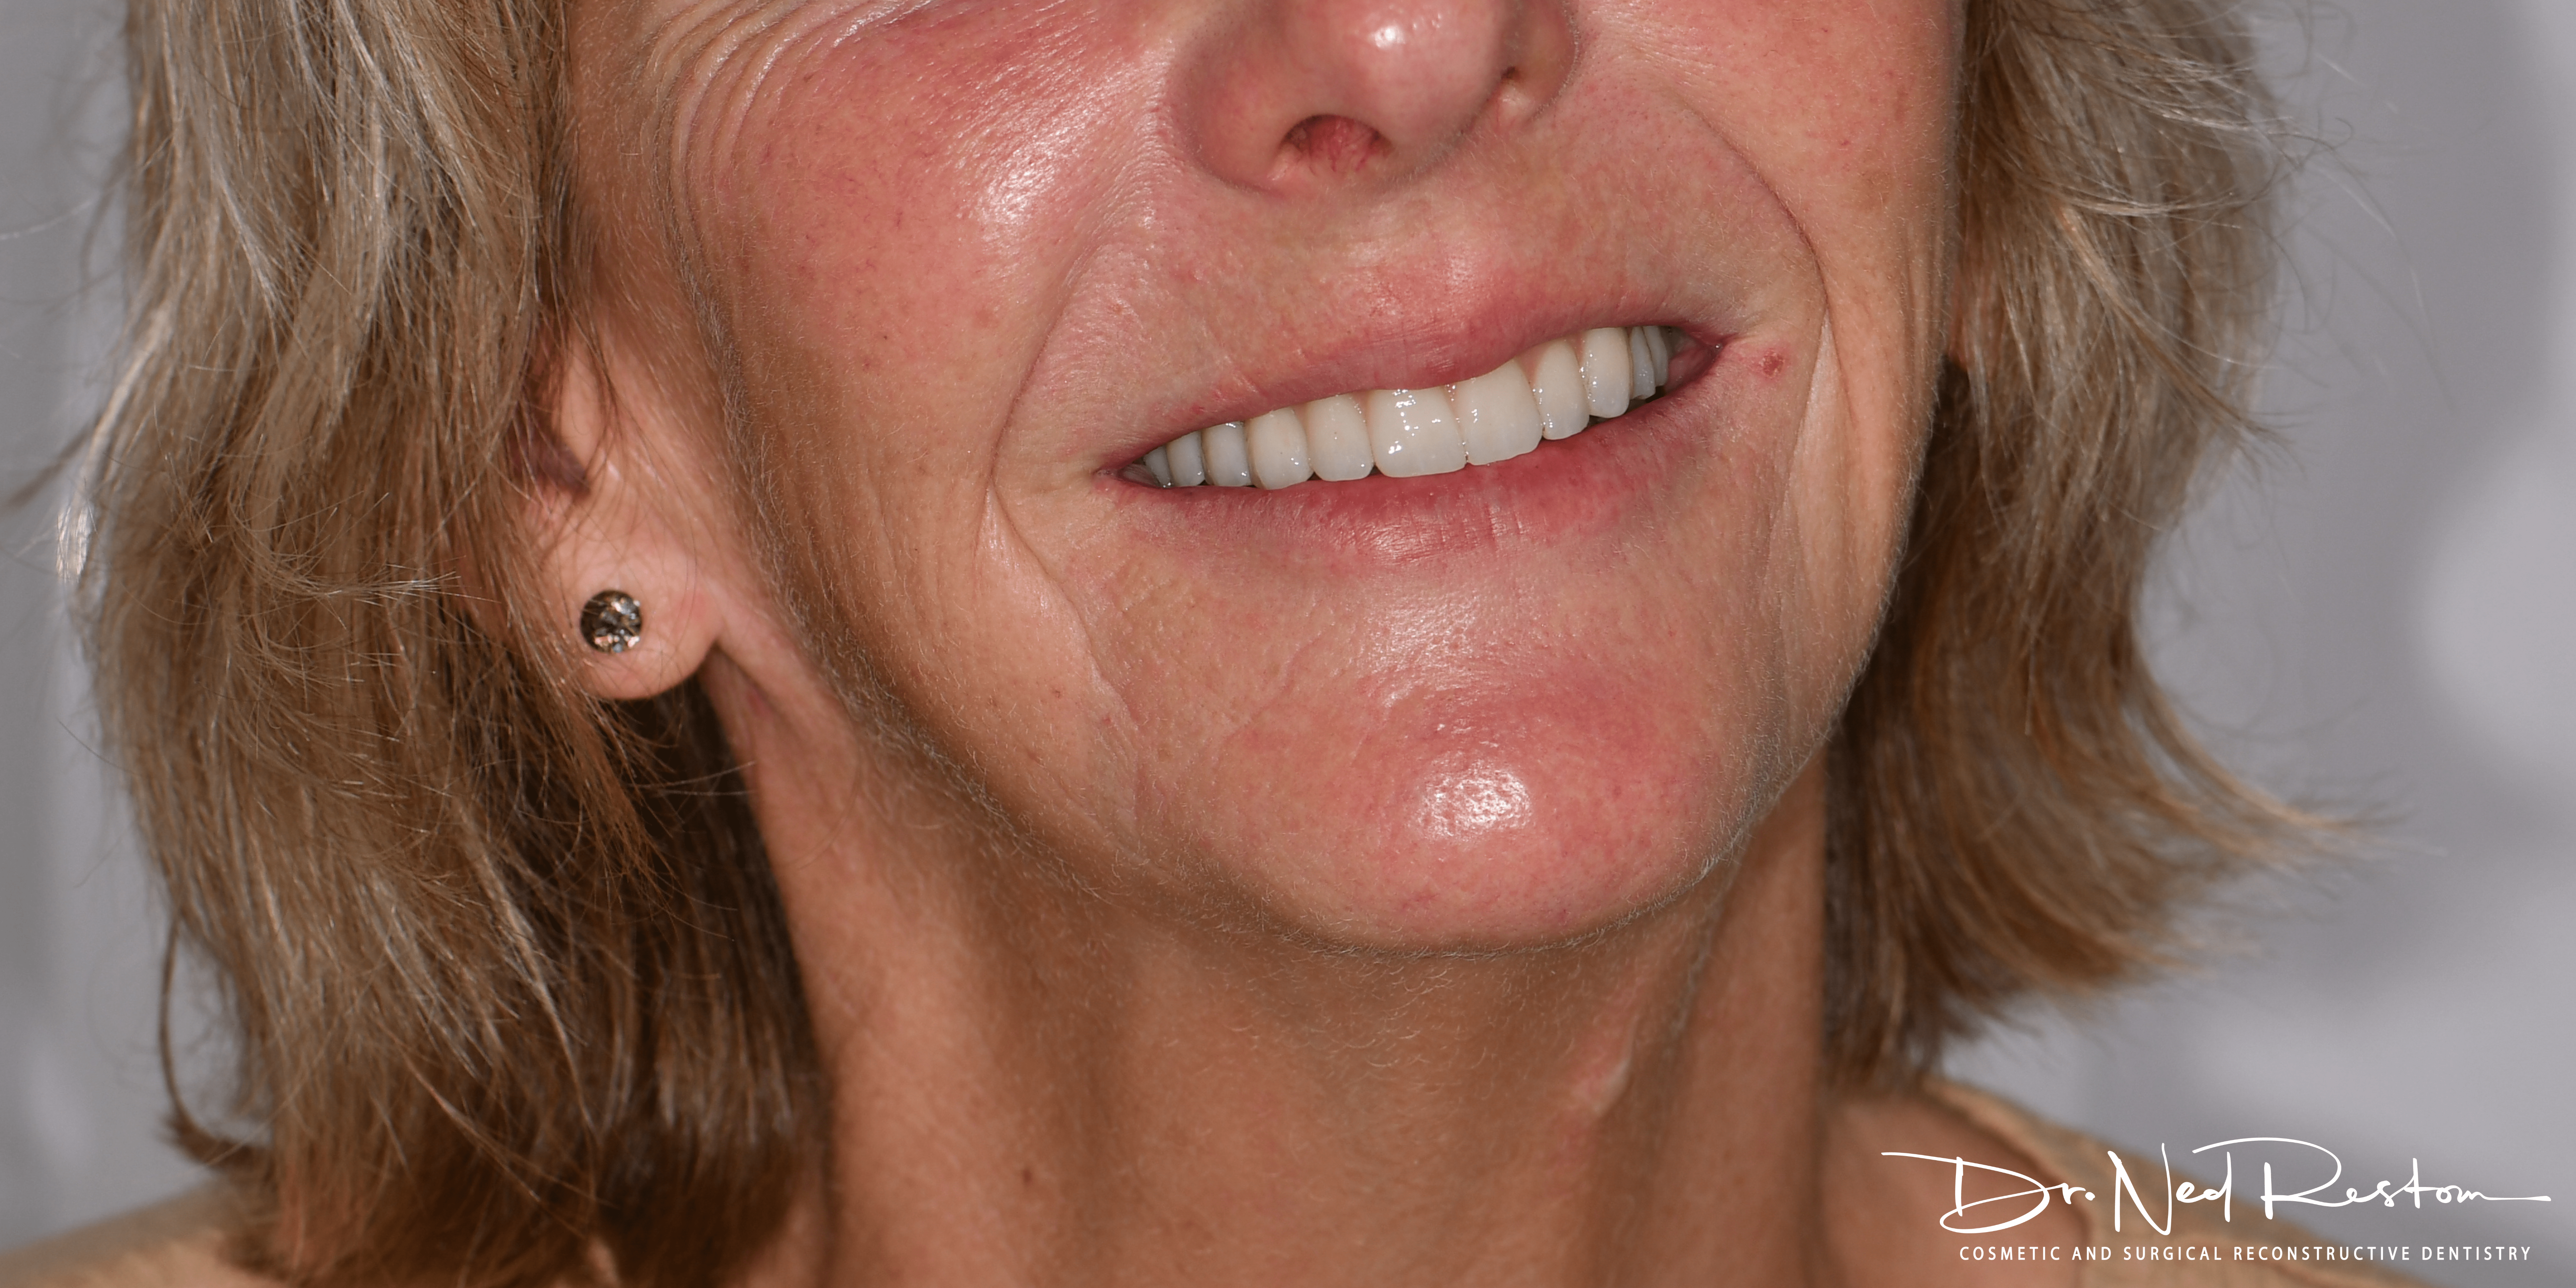 teeth on implants lady